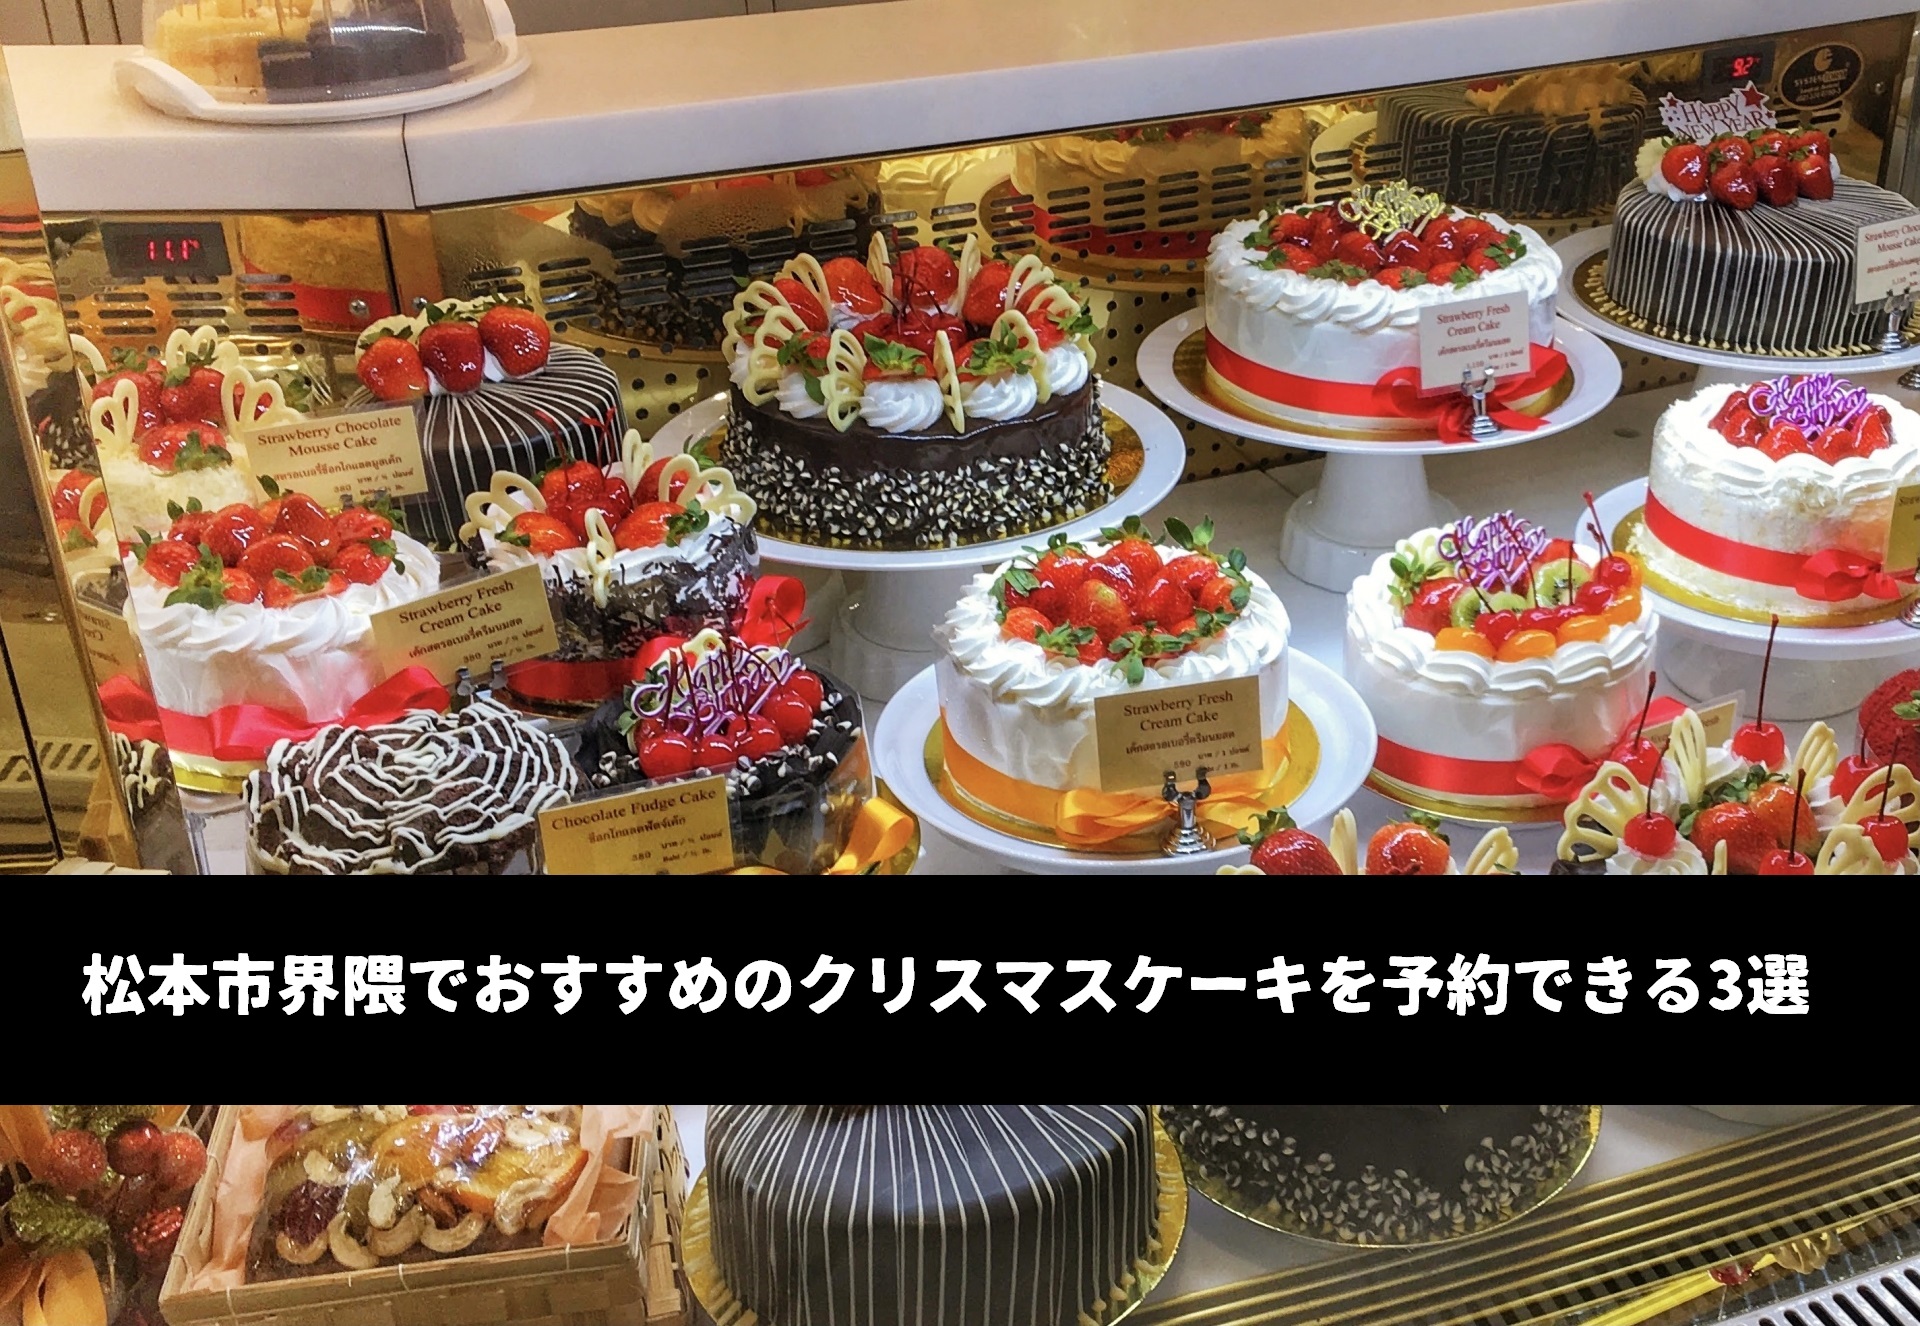 松本市界隈でおすすめのクリスマスケーキを予約できる店舗3選。ベタかもしれないけど人気店のそれはやはり素晴らしい。